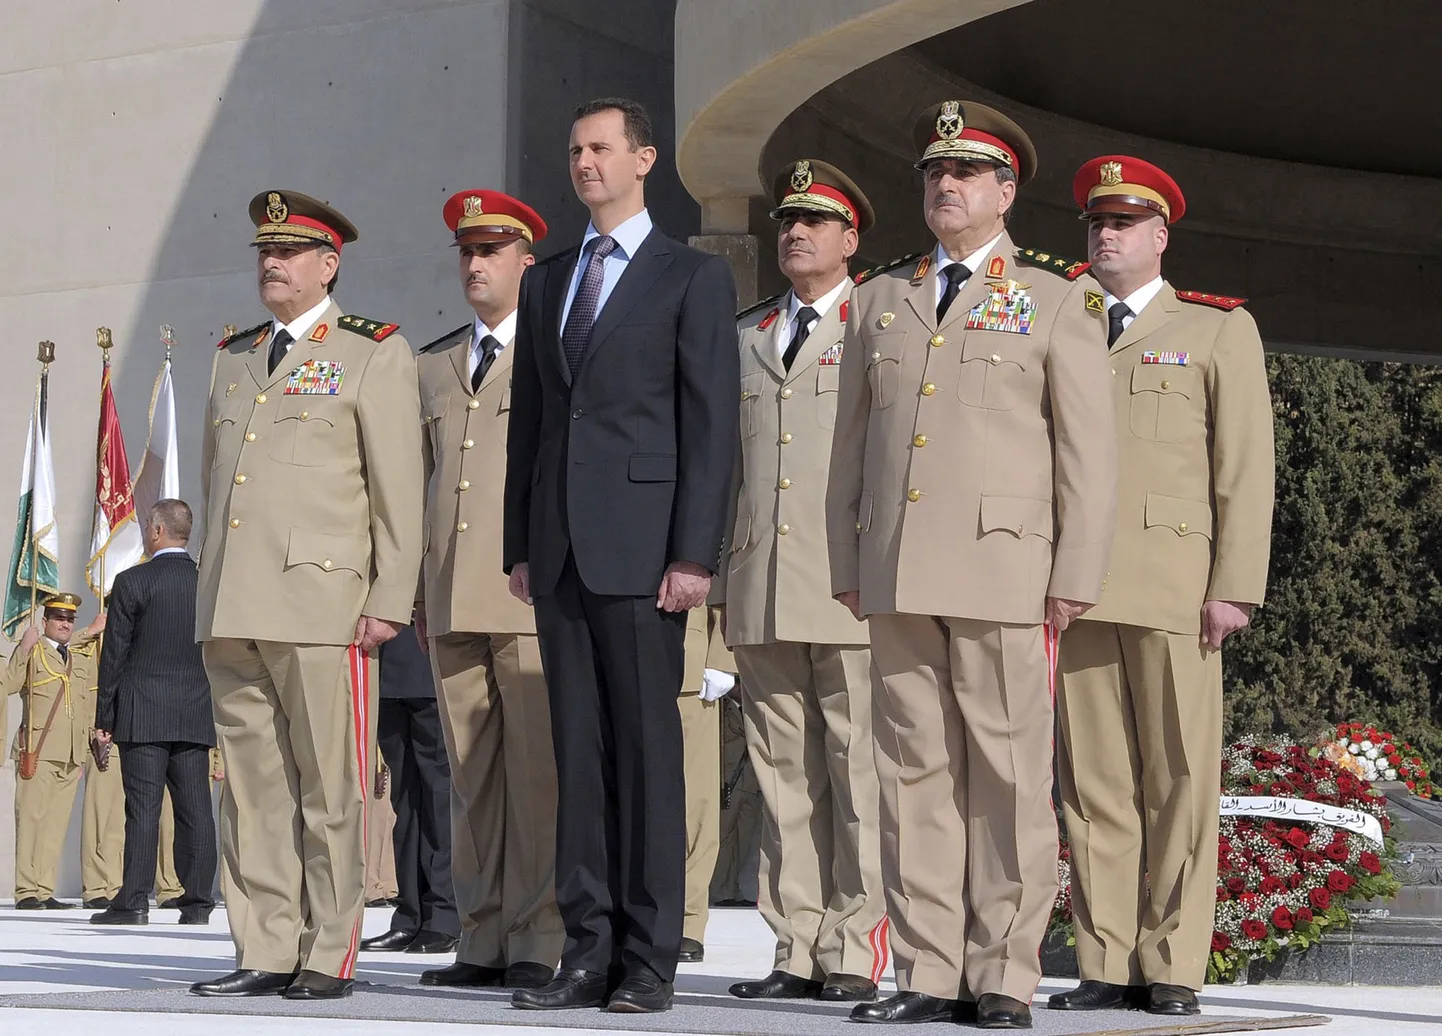 Süüria president Bashar al-Assad (keskel) 2011. aasta fotol koos täna hukkunud kaitseministri Daoud Rajha (esireas paremal) ja teiste armeejuhtidega. Rajha surma järel nimetati uueks kaitseministriks kindral Fahad Jassim al-Freij (esireas vasakul).